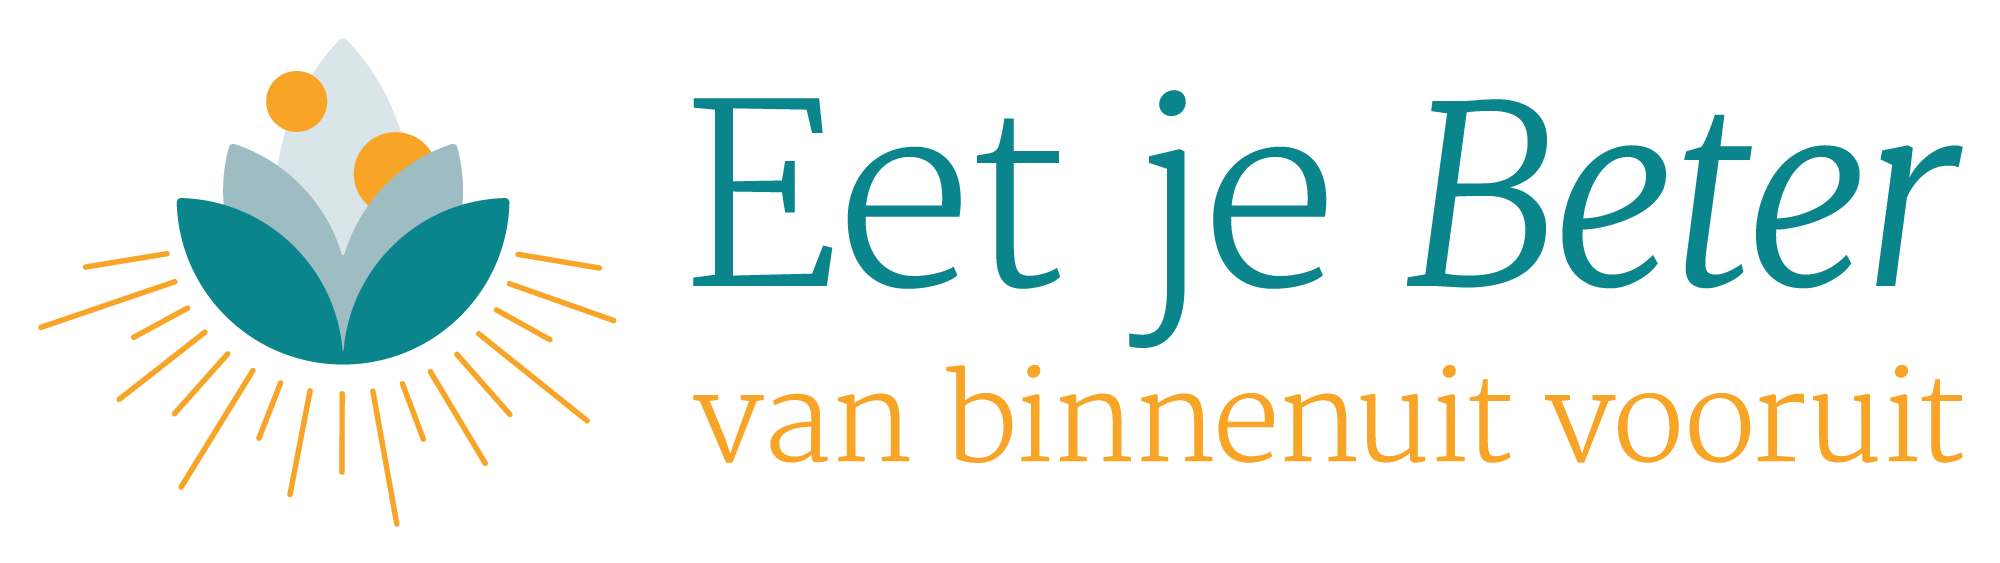 Eetjebeter.nl